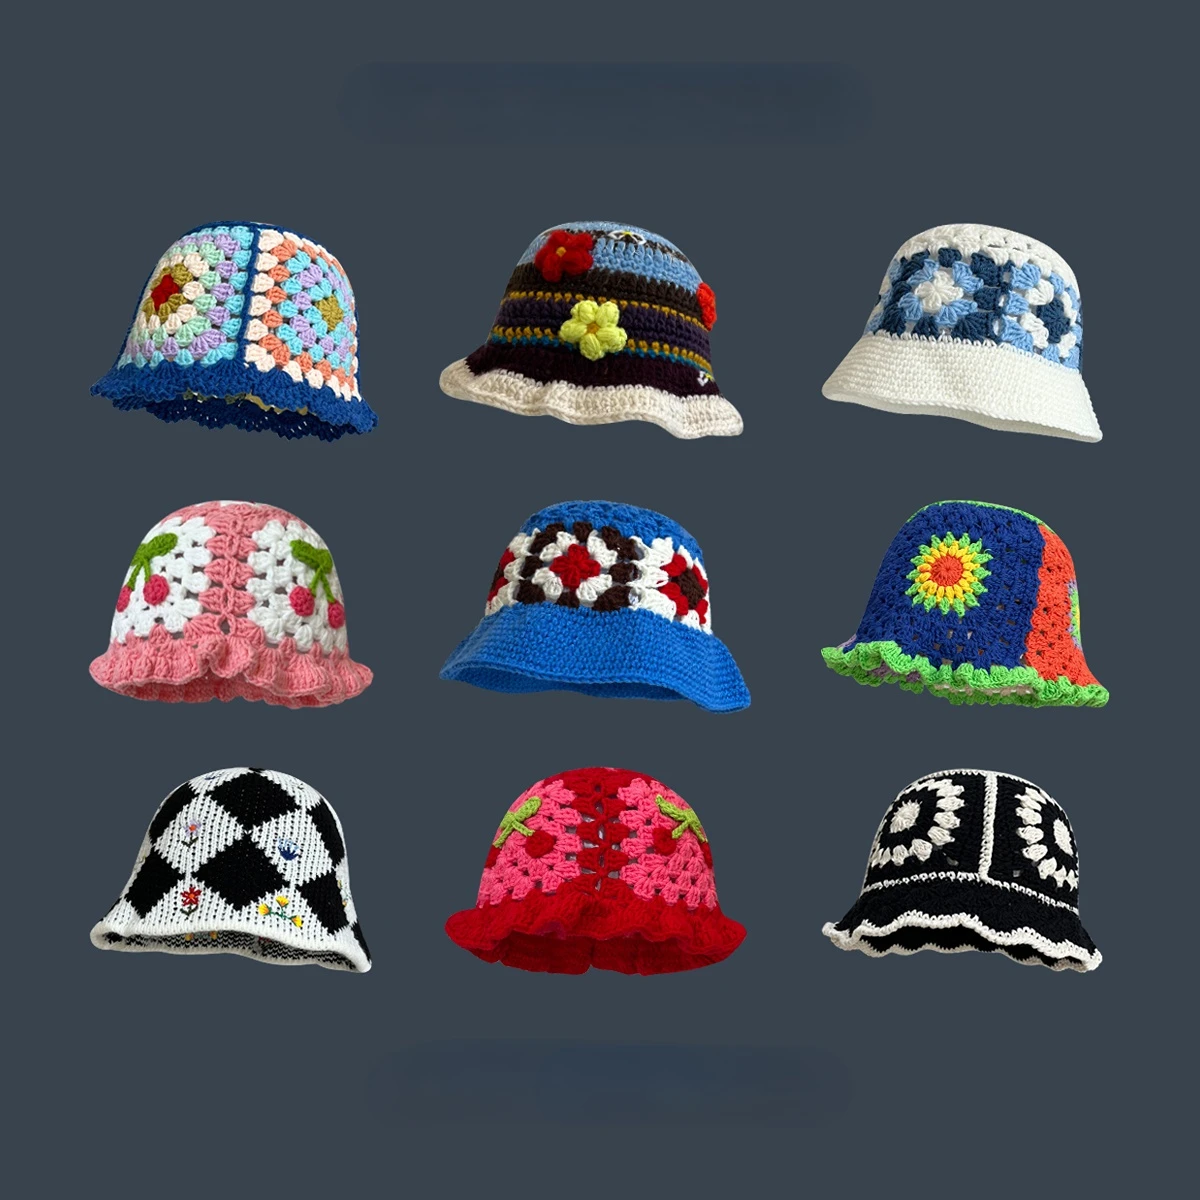 Handmade Crochet Flower Bucket Hat for Girls Korean Hot Travel Beach Pan... - $16.83